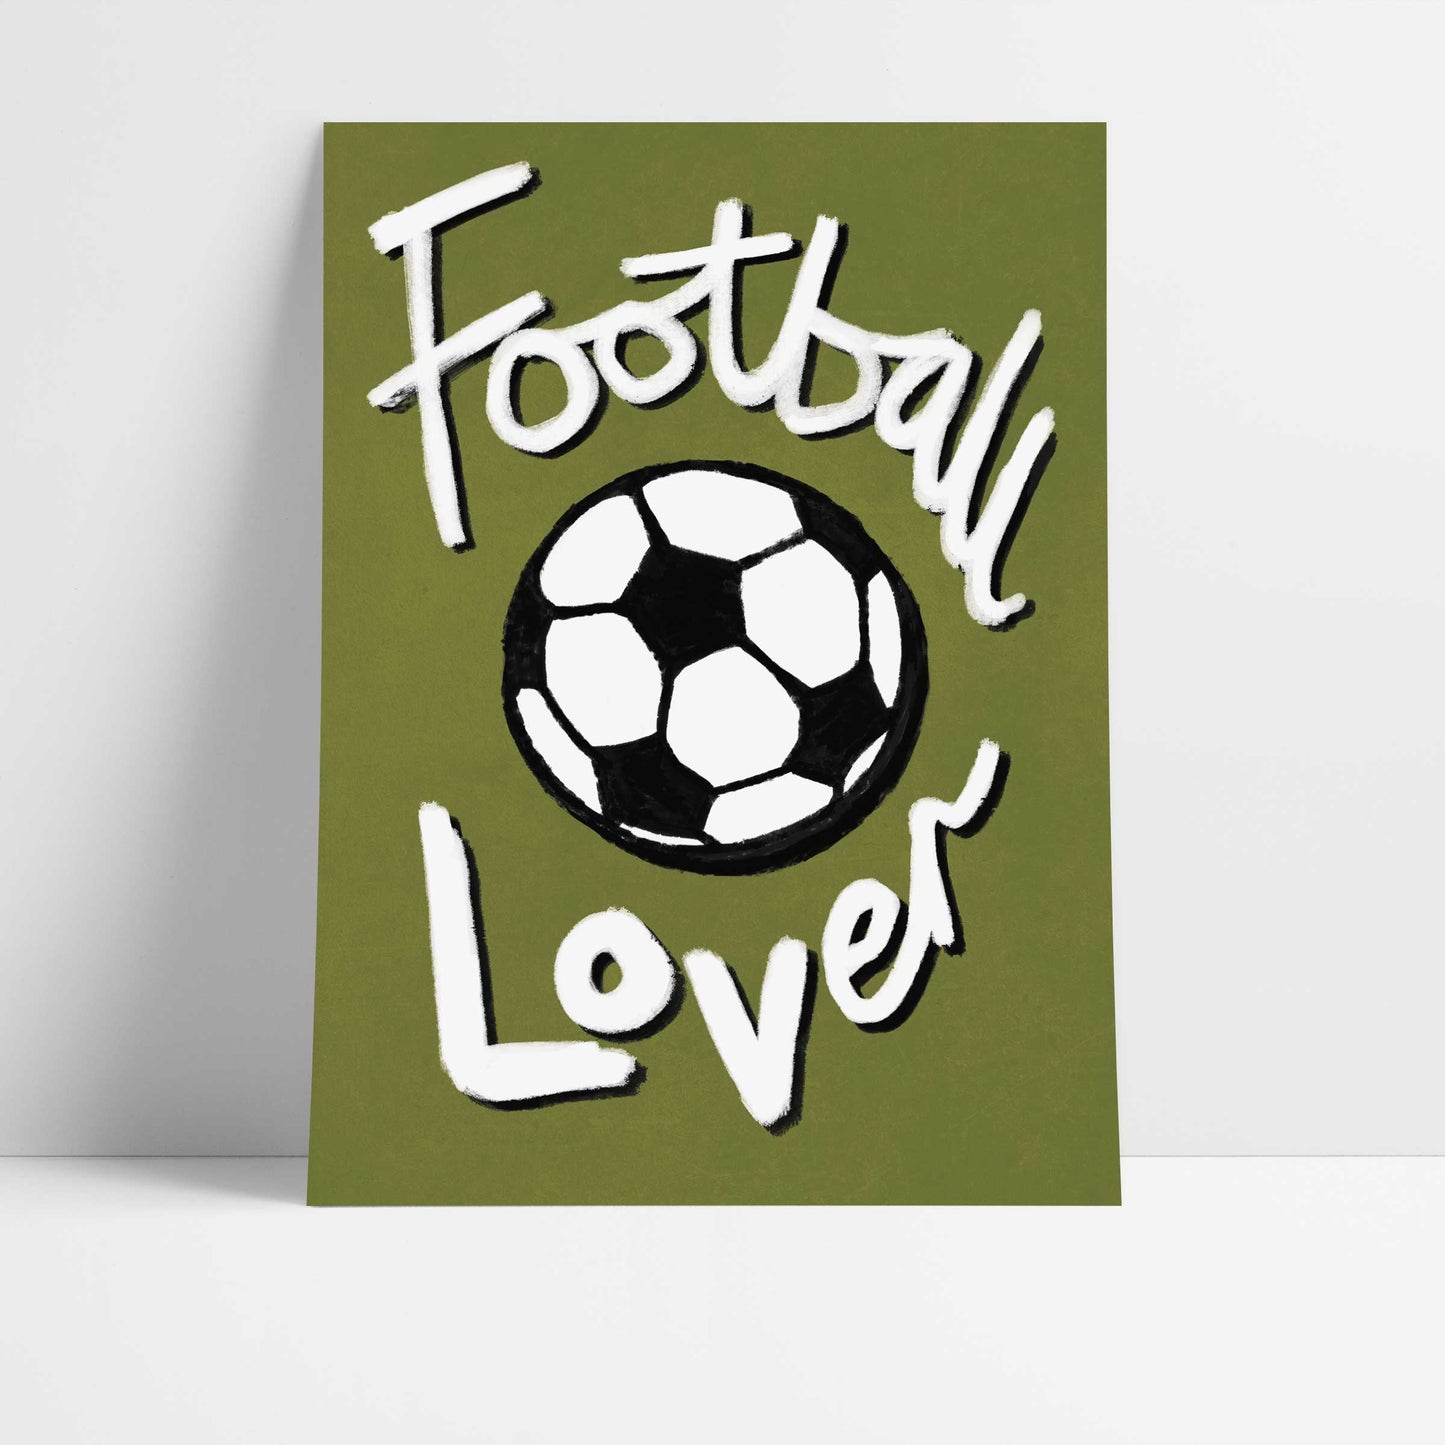 Football Lover Print - Olive Green, Black, White Fine Art Print